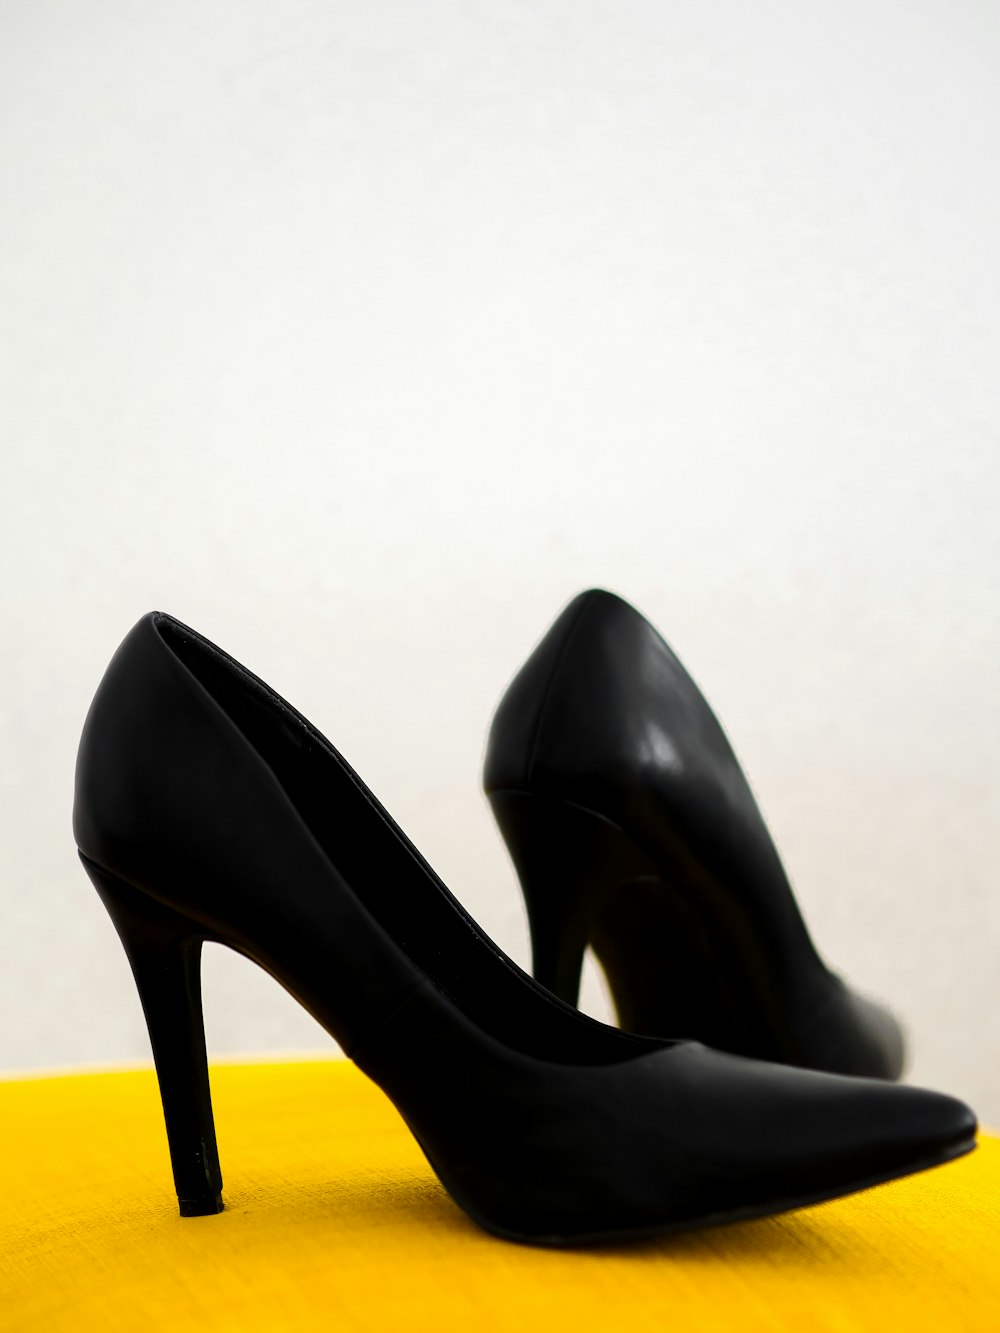 chaussures à talons en cuir noir sur chaise jaune